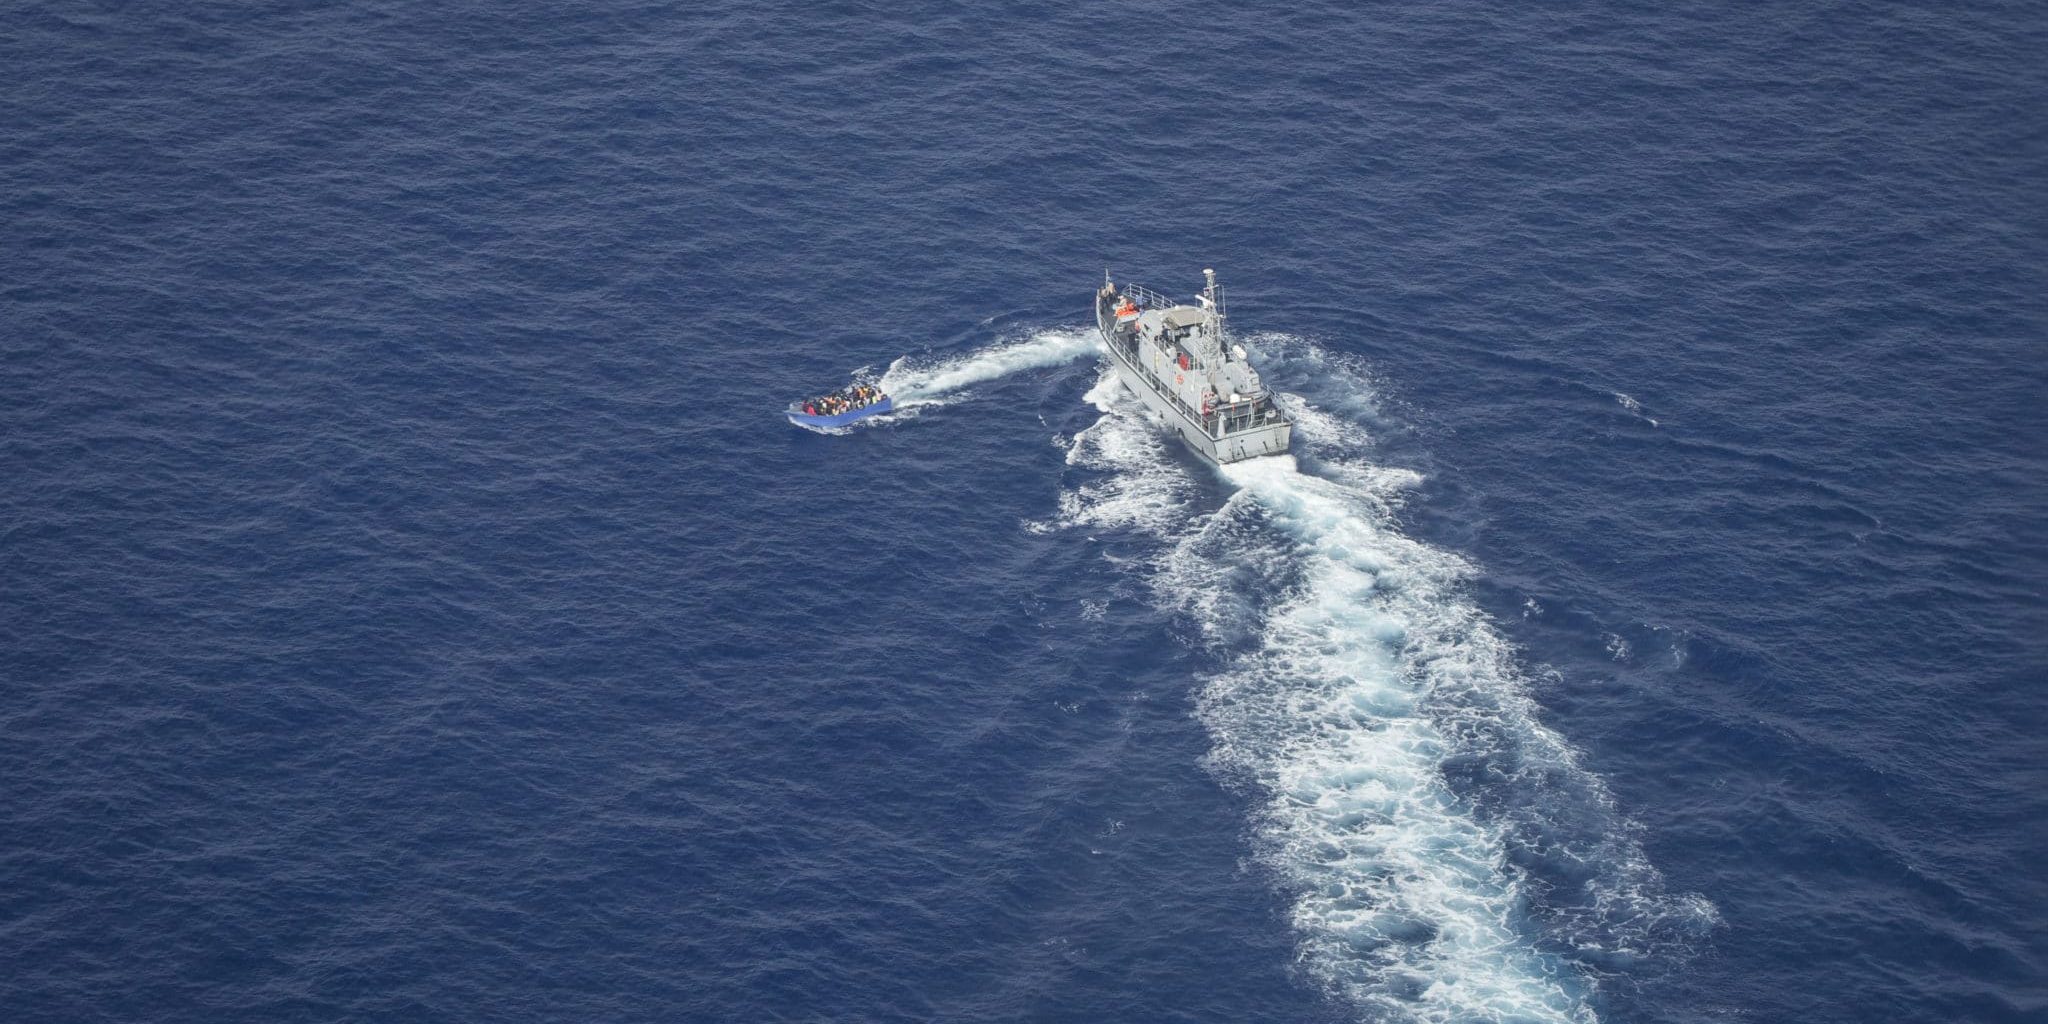 الصورة: ما يسمى بخفر السواحل الليبي يطارد و يطلق النار علي قارب يحمل مهاجرين في محنة وسط البحر المتوسط, يونيو 2021. "SeaWatch" ©